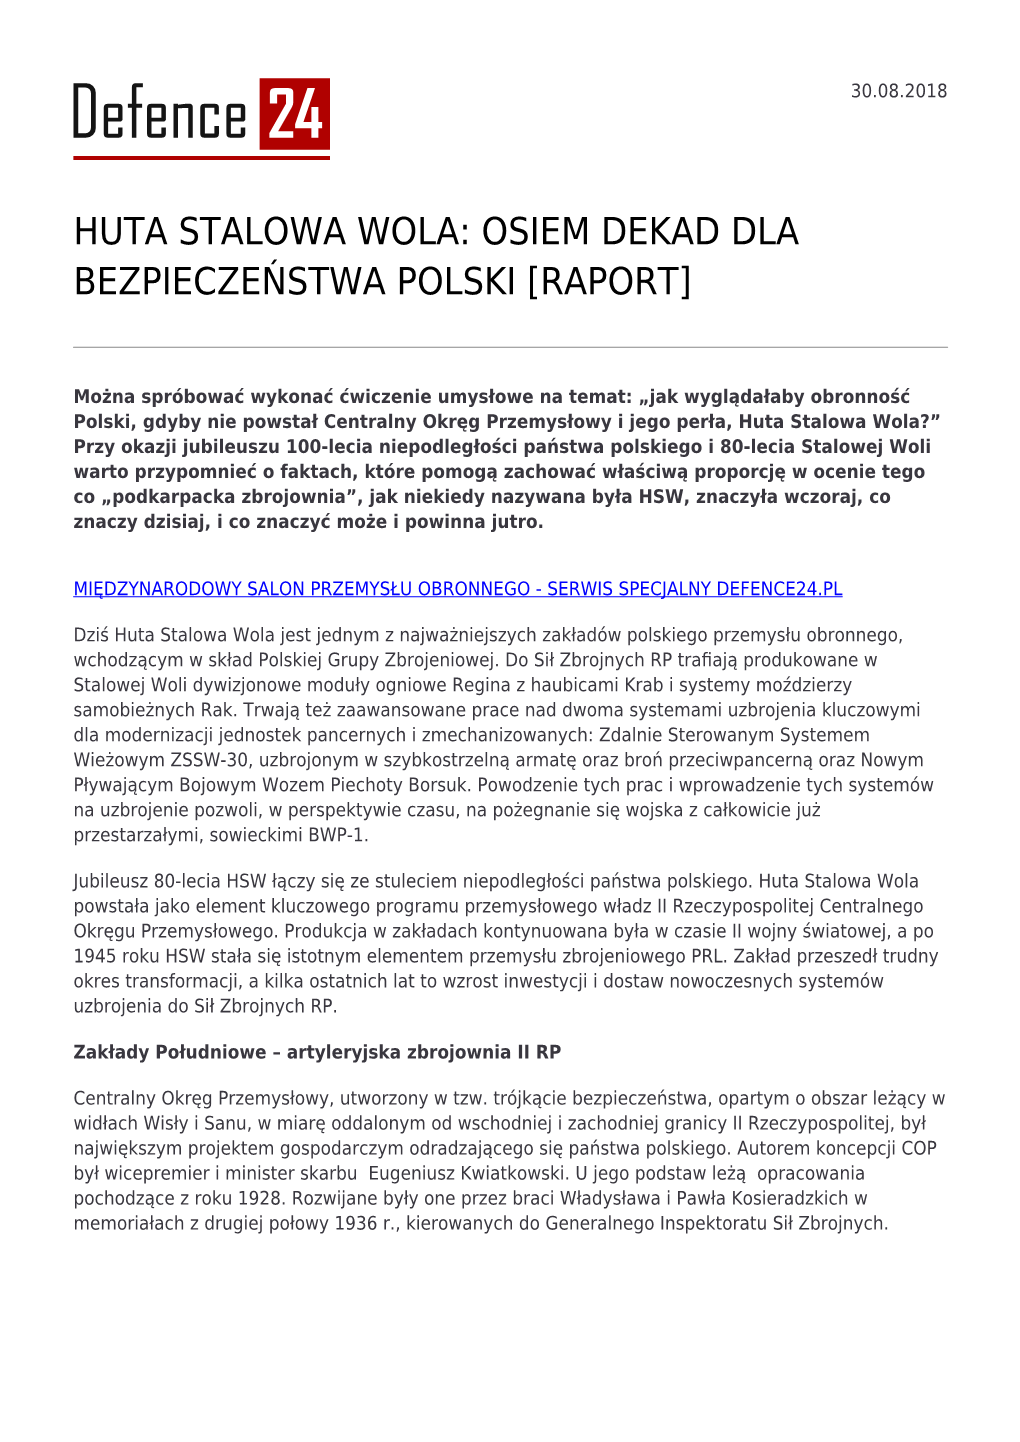 Huta Stalowa Wola: Osiem Dekad Dla Bezpieczeństwa Polski [Raport]